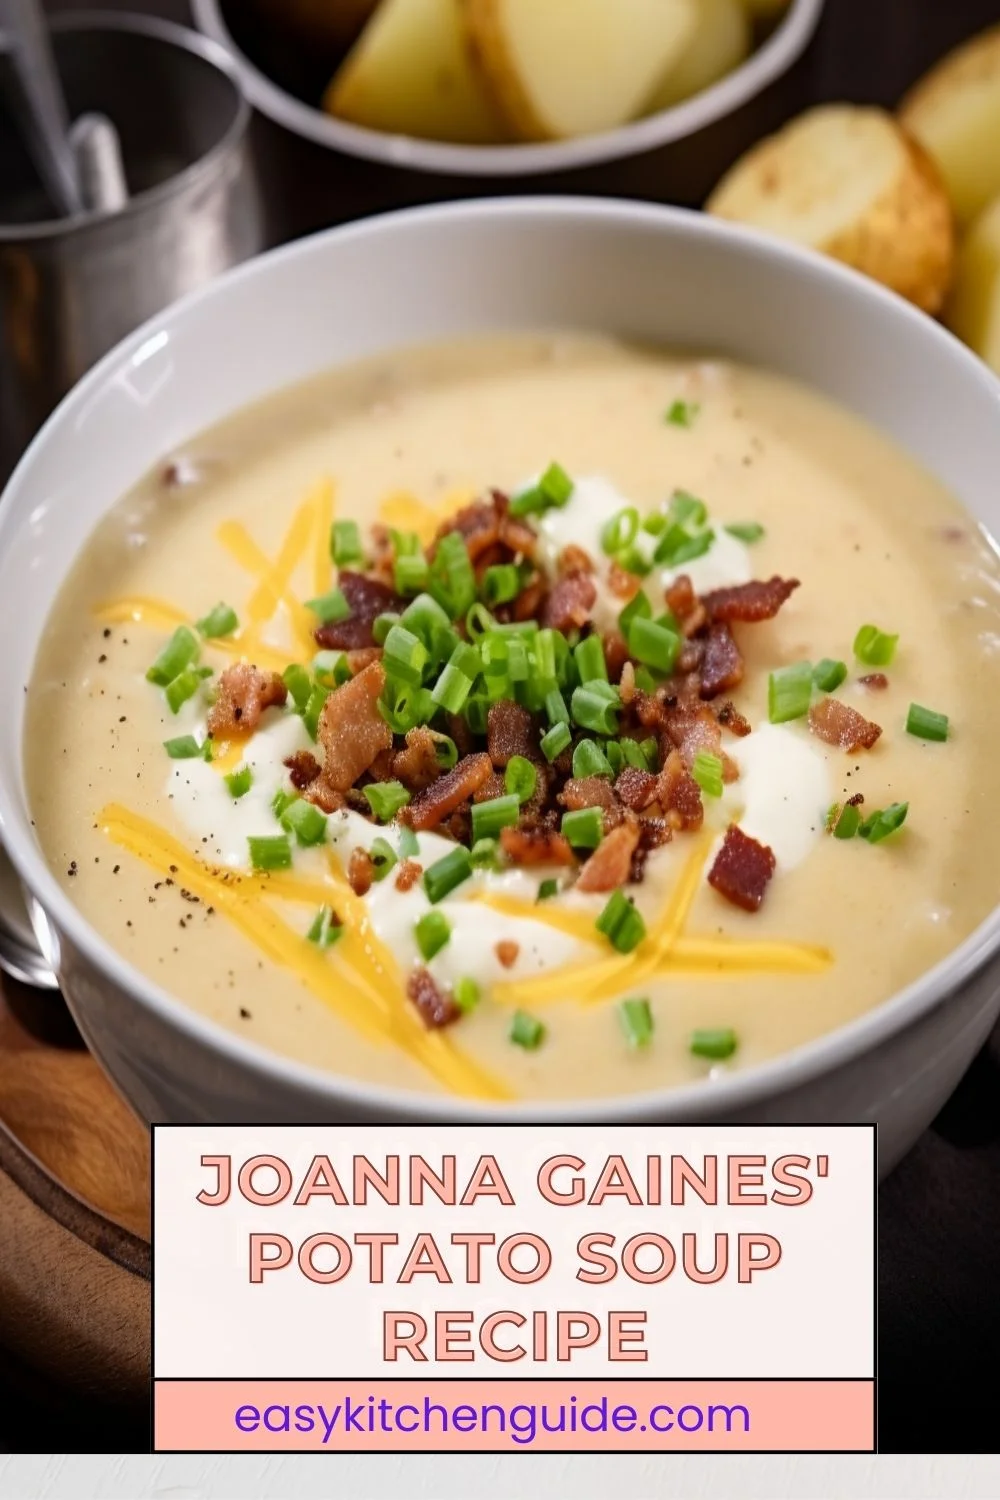 Joanna Gaines' Potato Soup Recipe - Easy Kitchen Guide